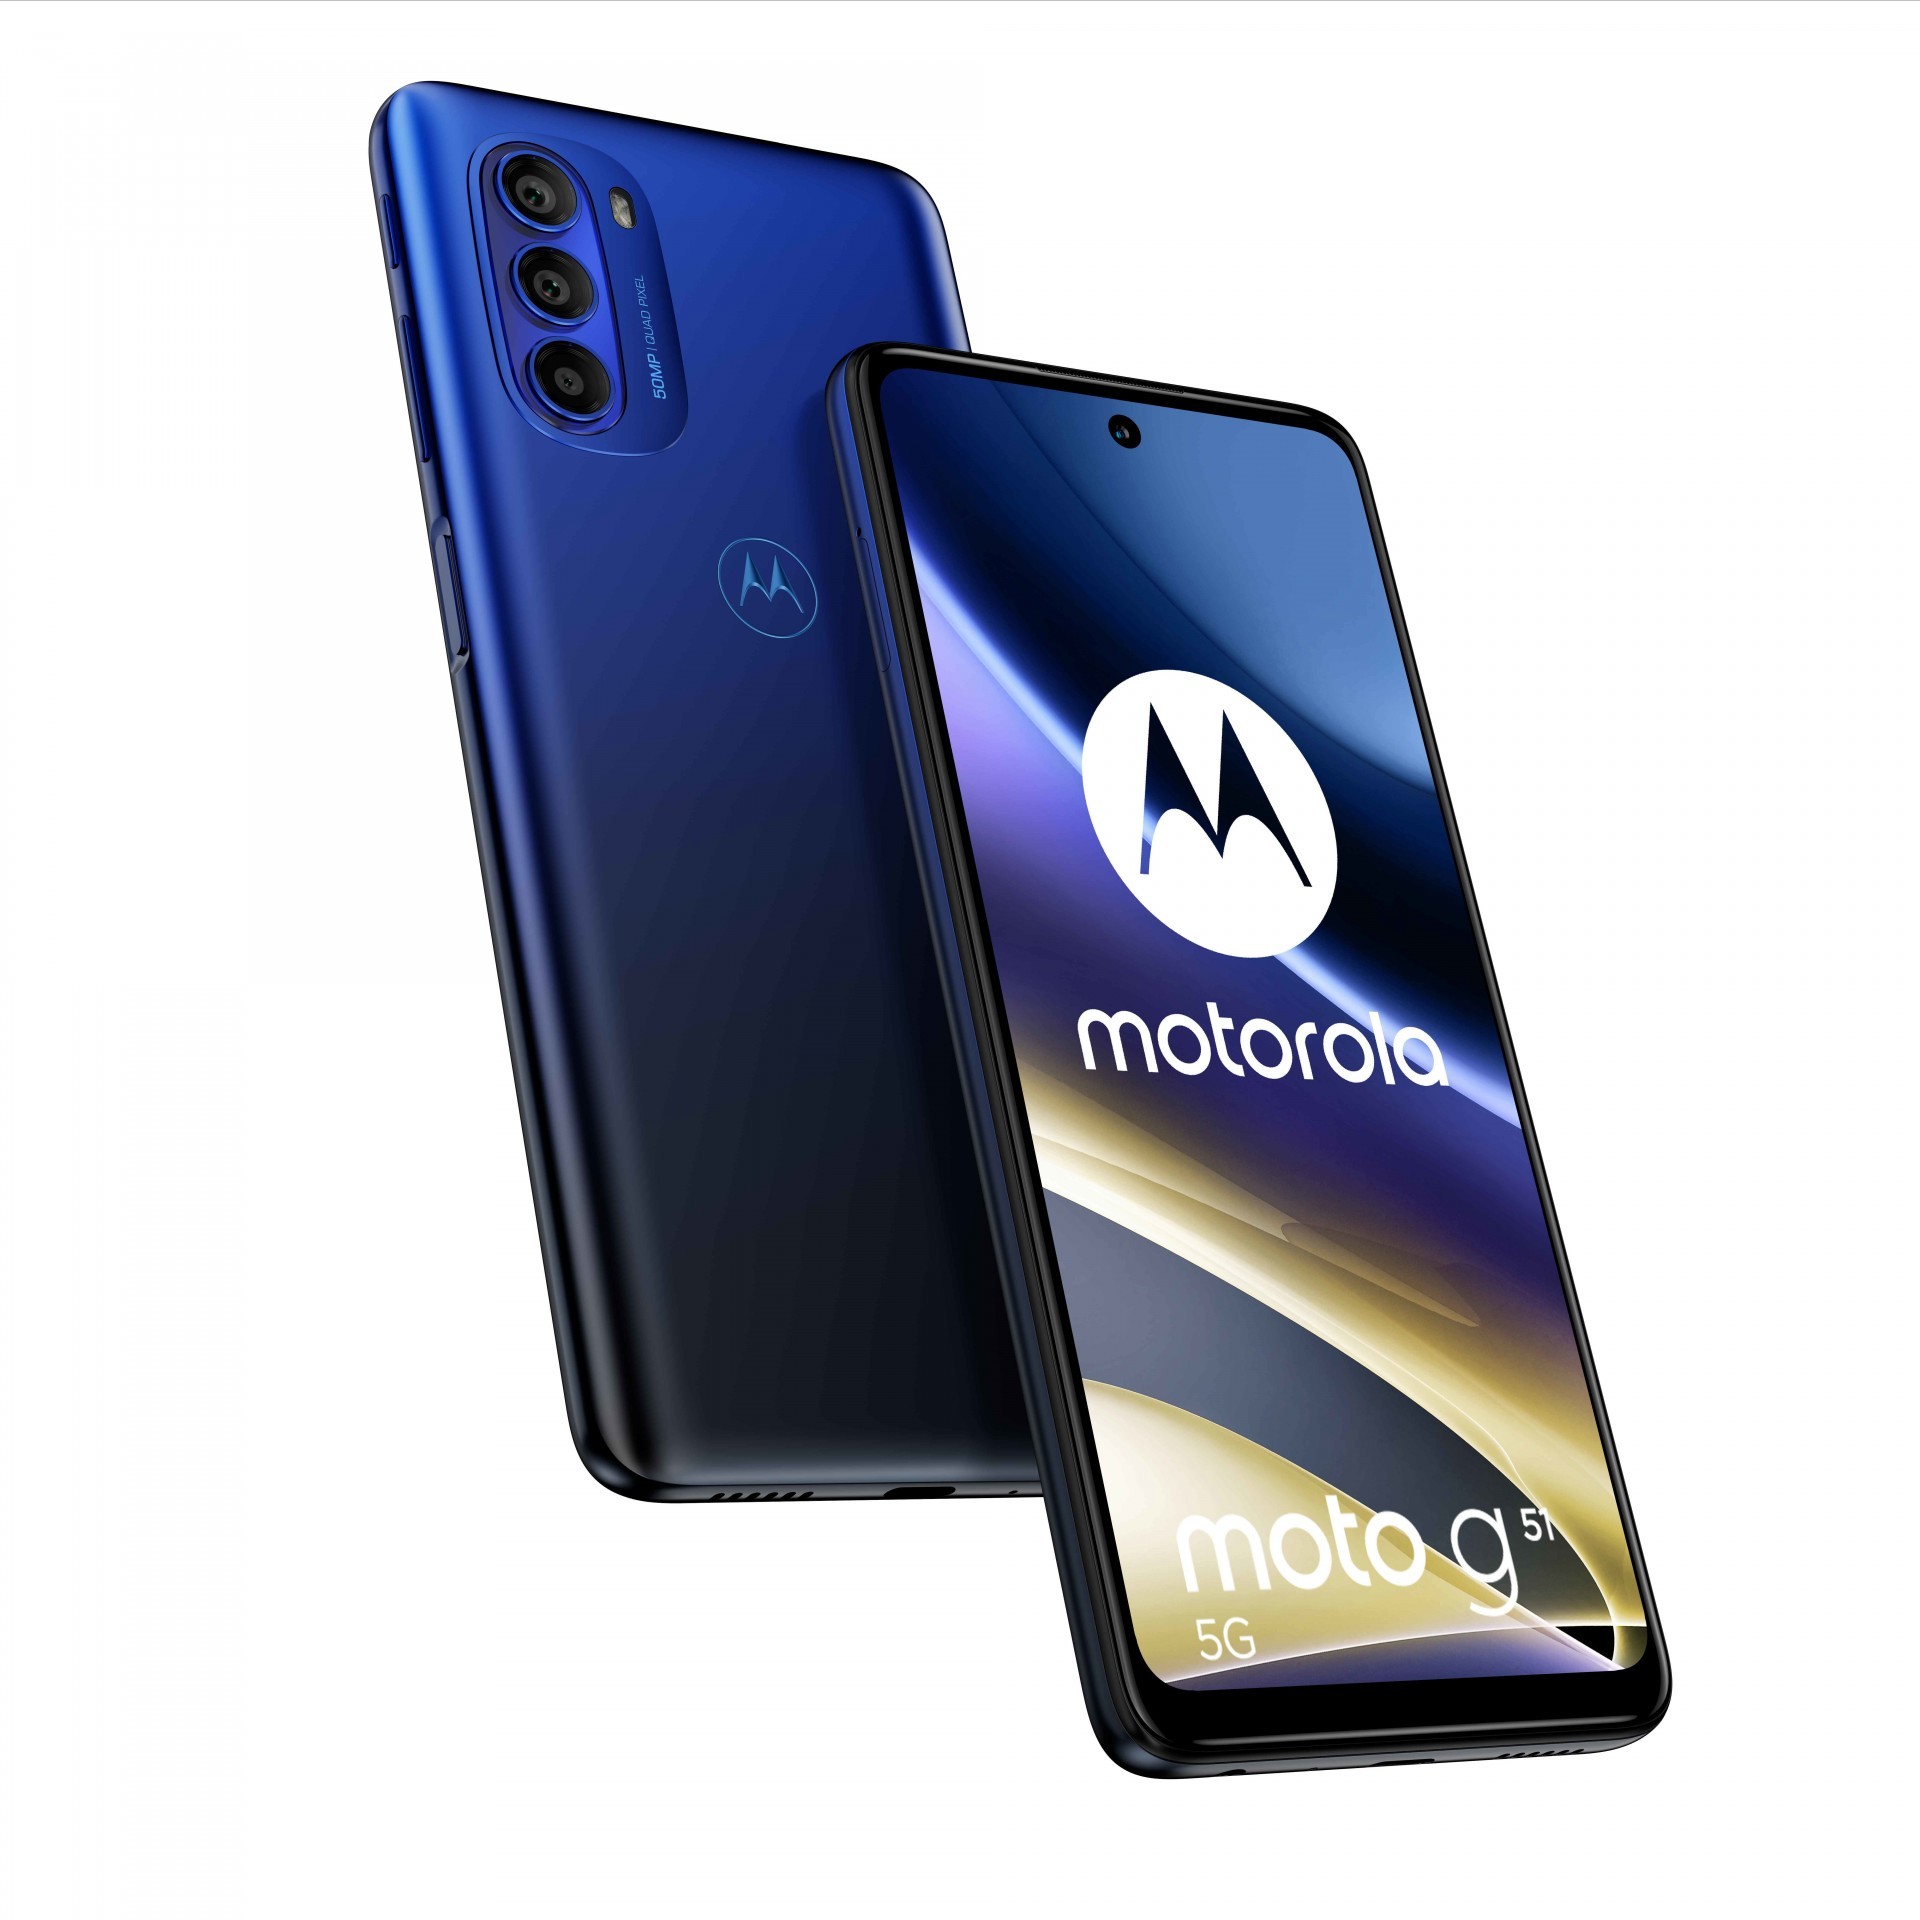 Motorola g 系列最新款 5G 手機 moto g51 5G 宣布 2 月 18 日發售